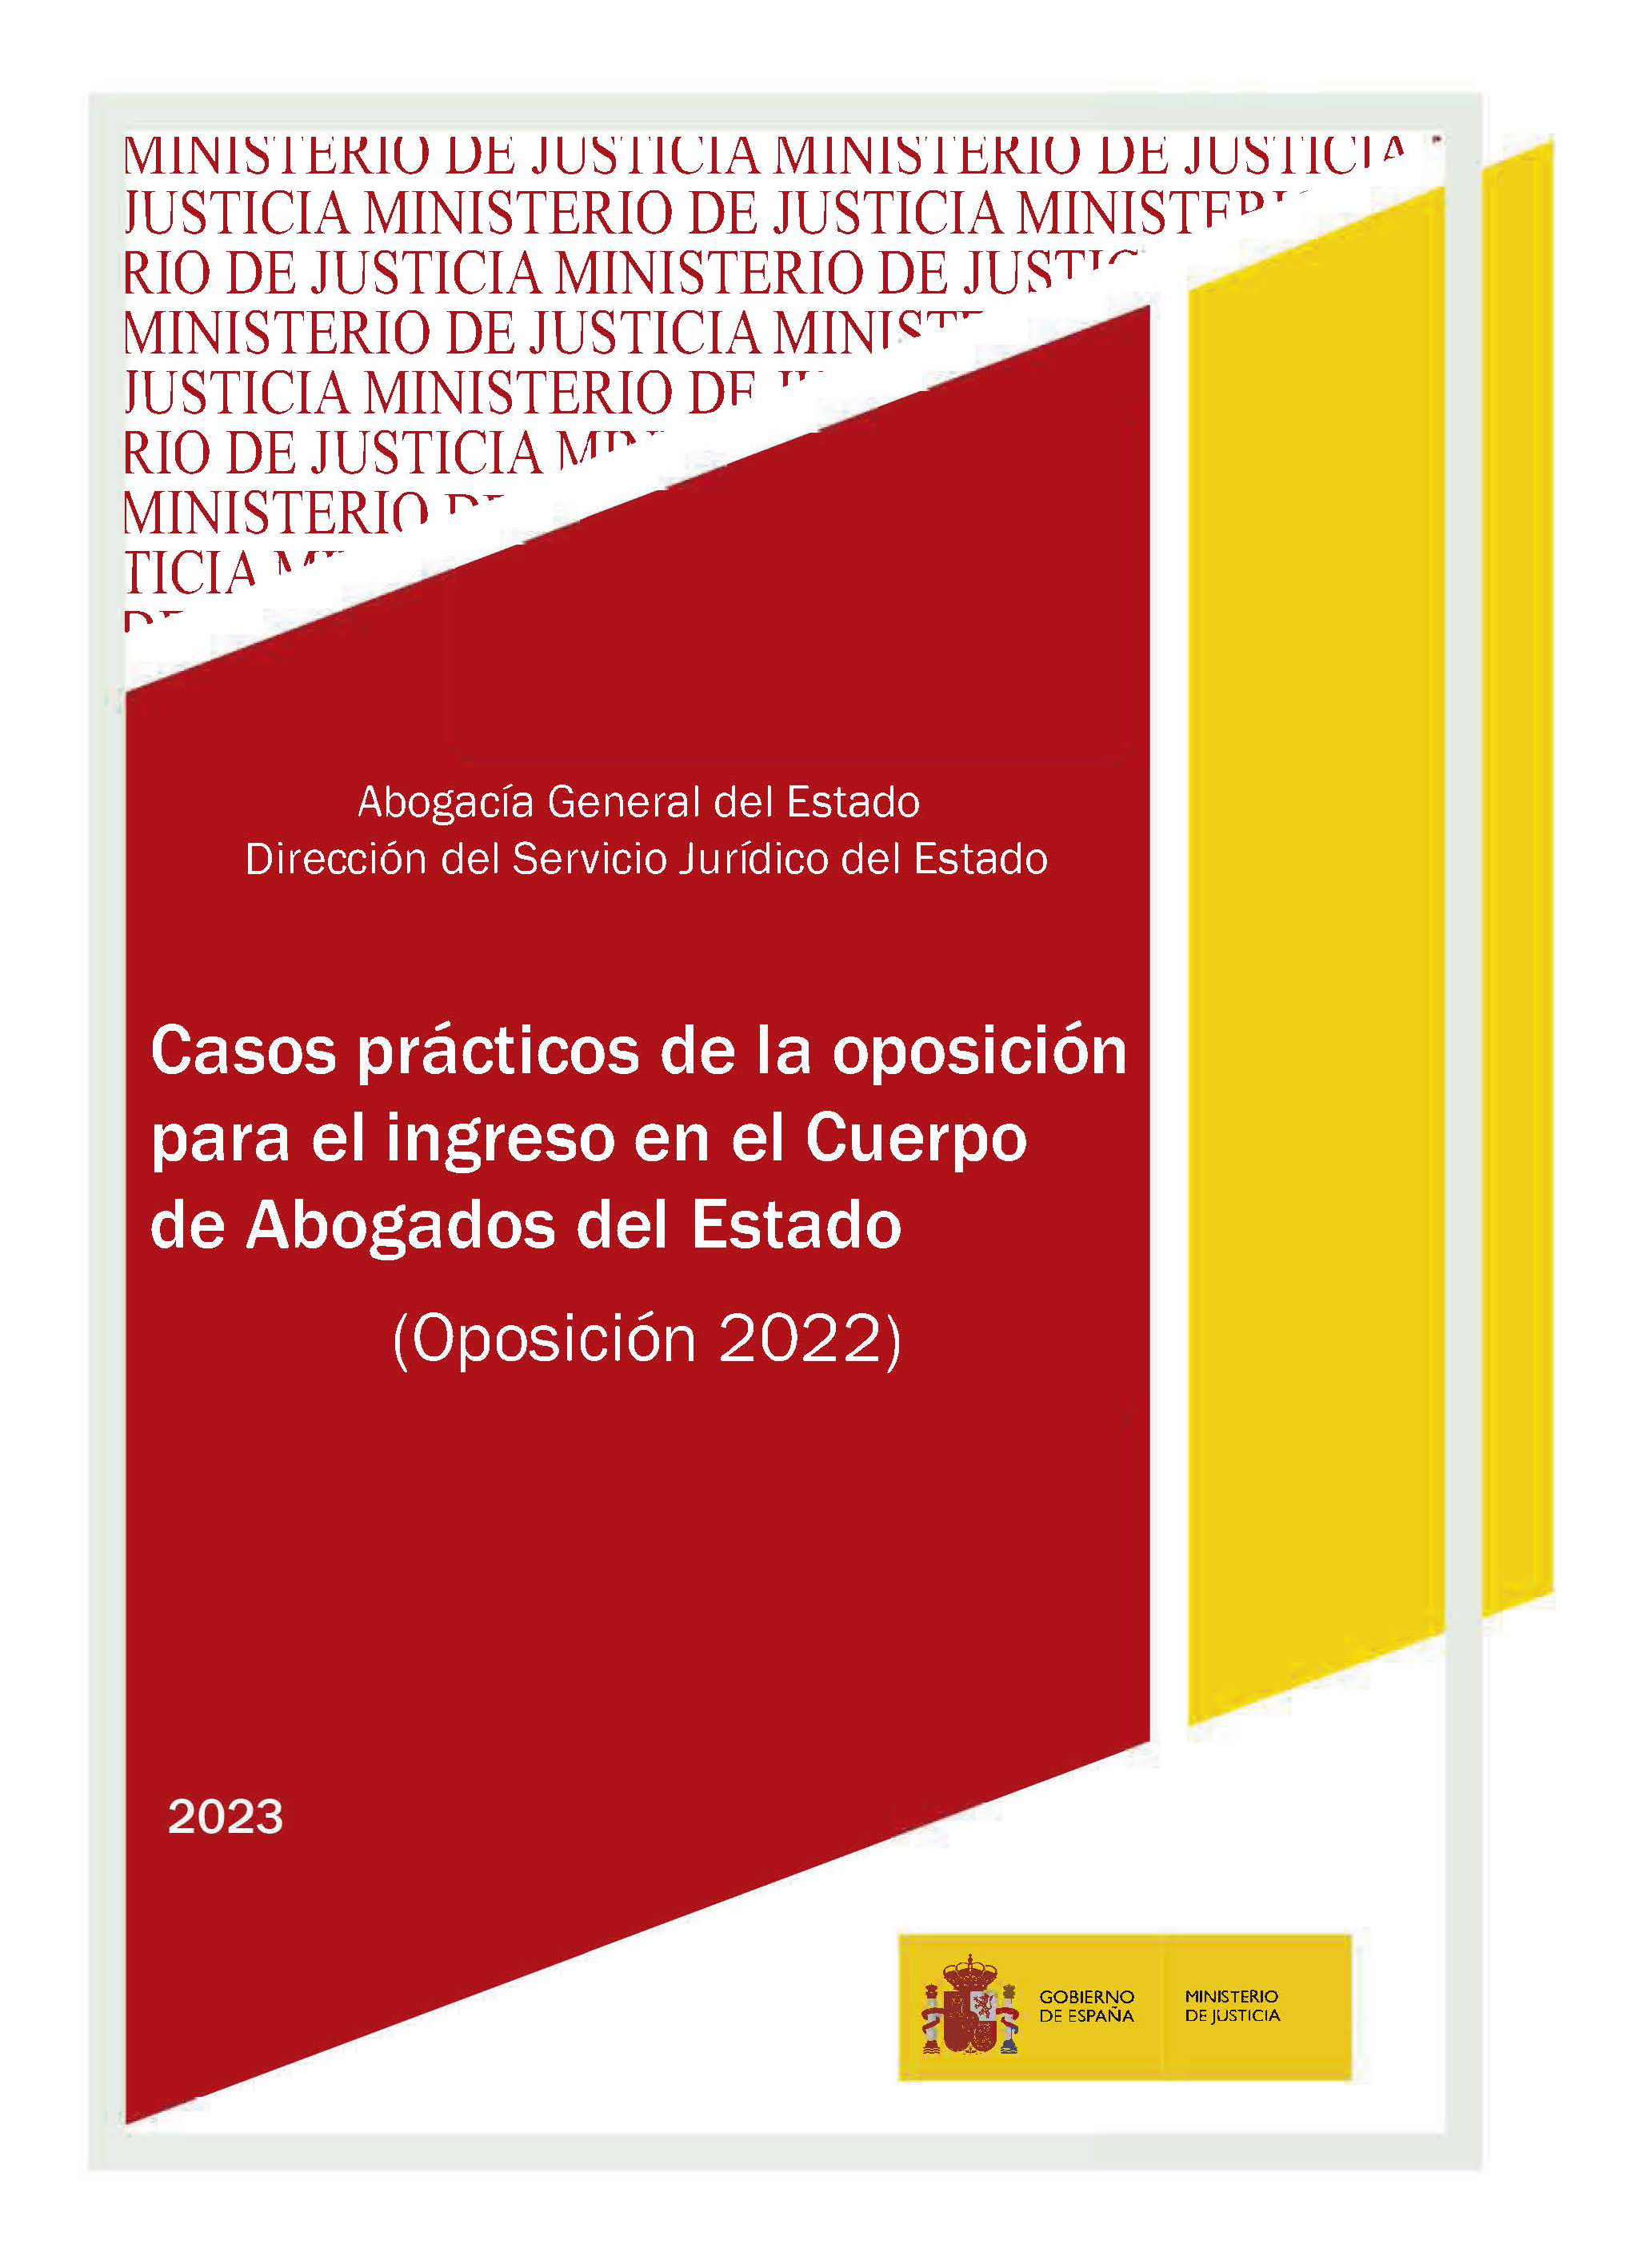 View details of CASOS PRÁCTICOS DE LA OPOSICIÓN PARA EL INGRESO EN EL CUERPO DE ABOGADOS DEL ESTADO. Oposición 2022. PDF